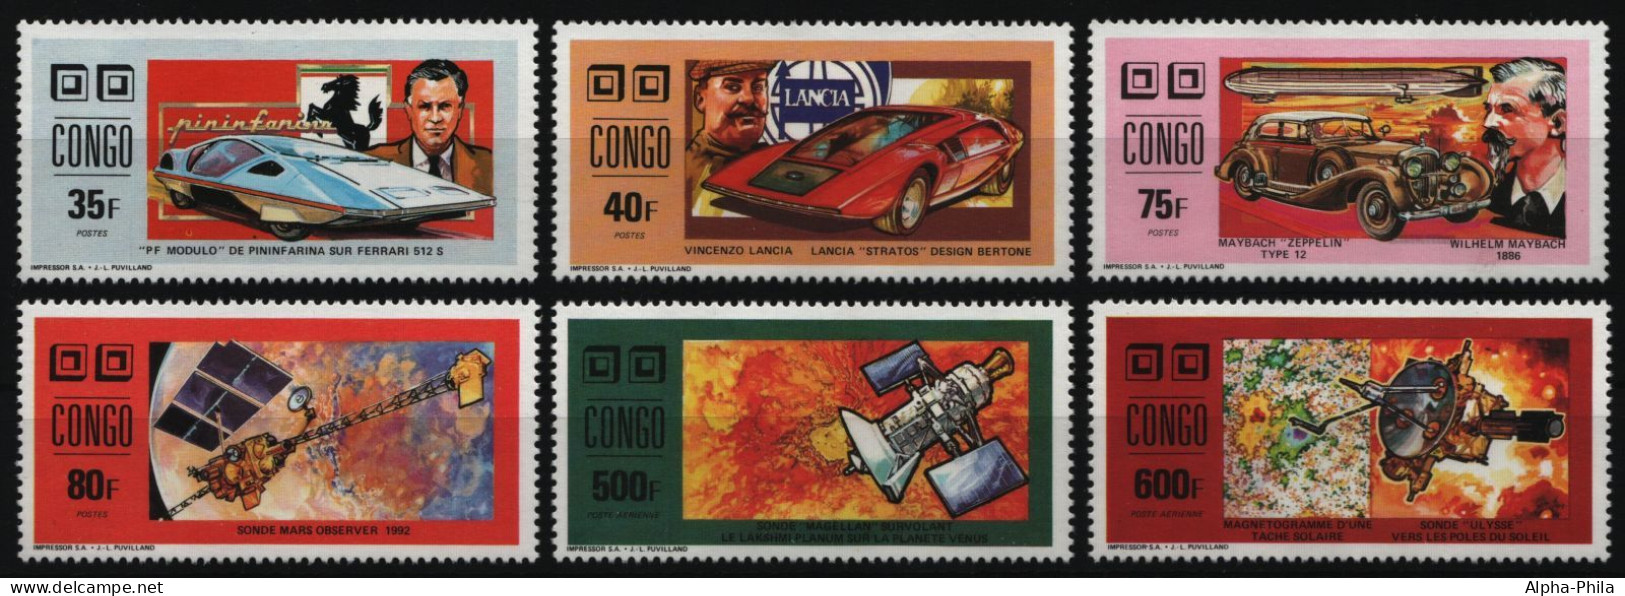 Kongo-Brazzaville 1991 - Mi-Nr. 1274-1279 A ** - MNH - Autos - Weltraum - Ungebraucht